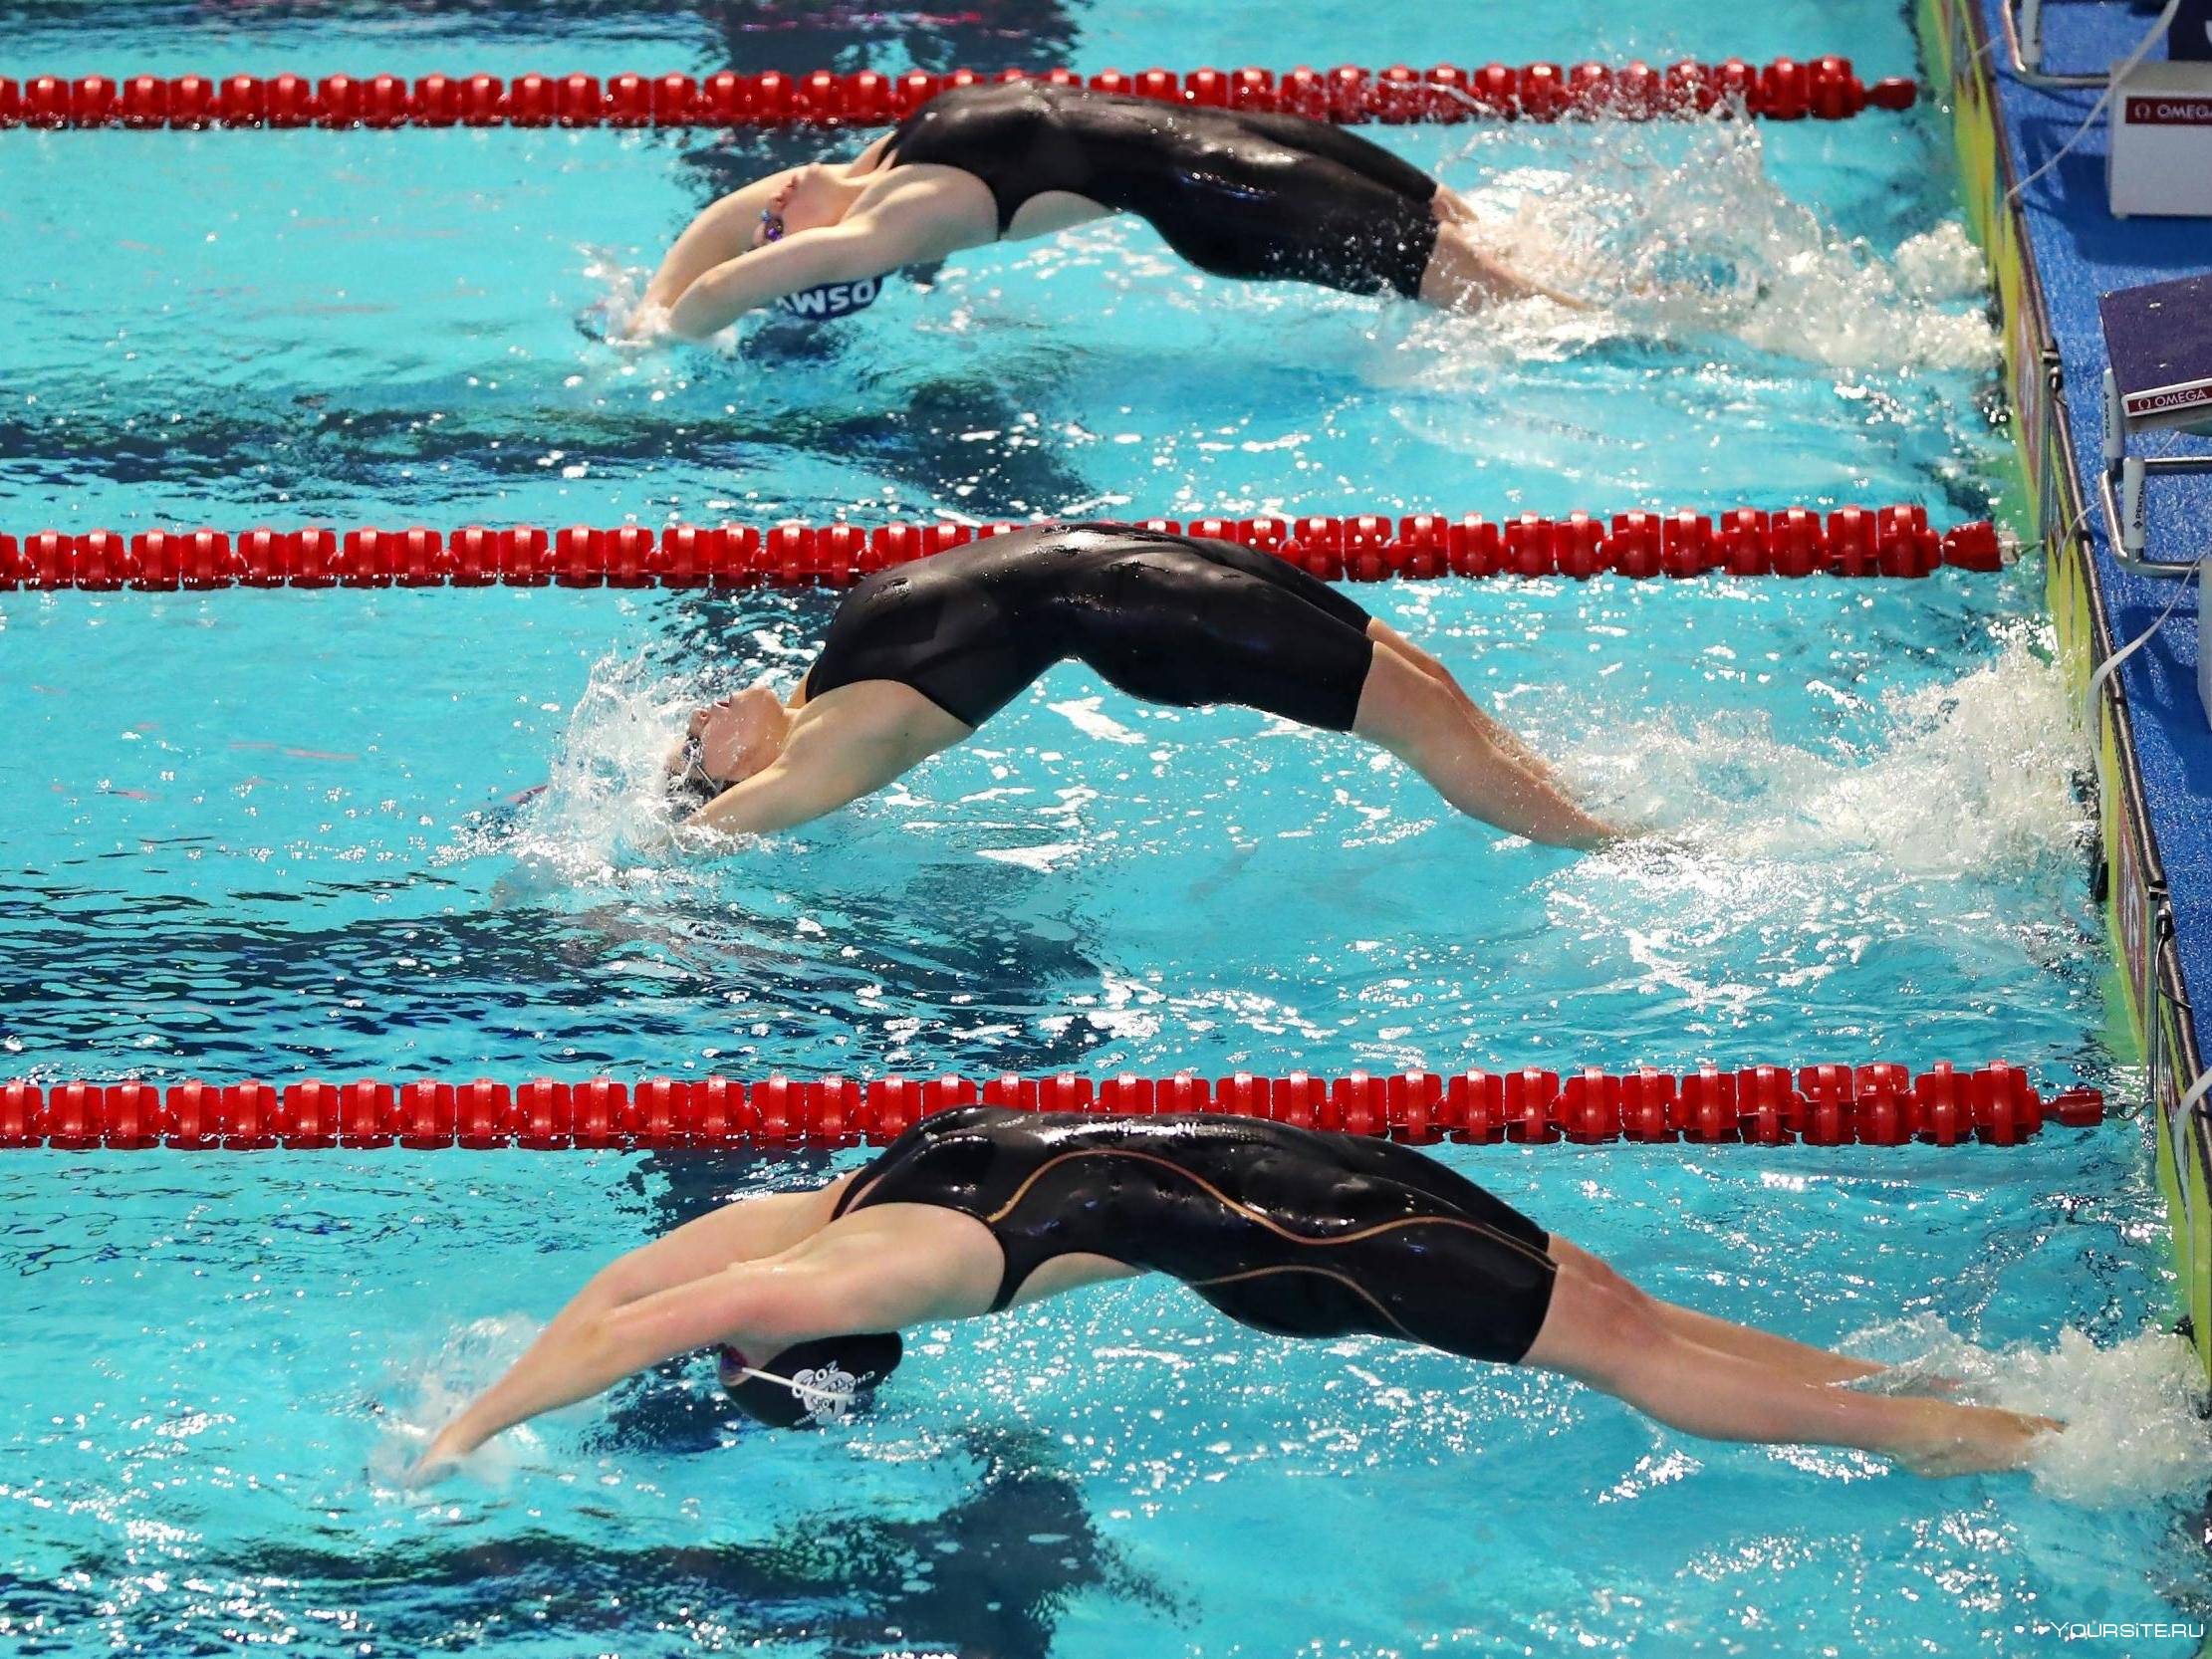 Как научиться быстро плавать, фото / как быстро плавать кролем взрослому в бассейне, видео